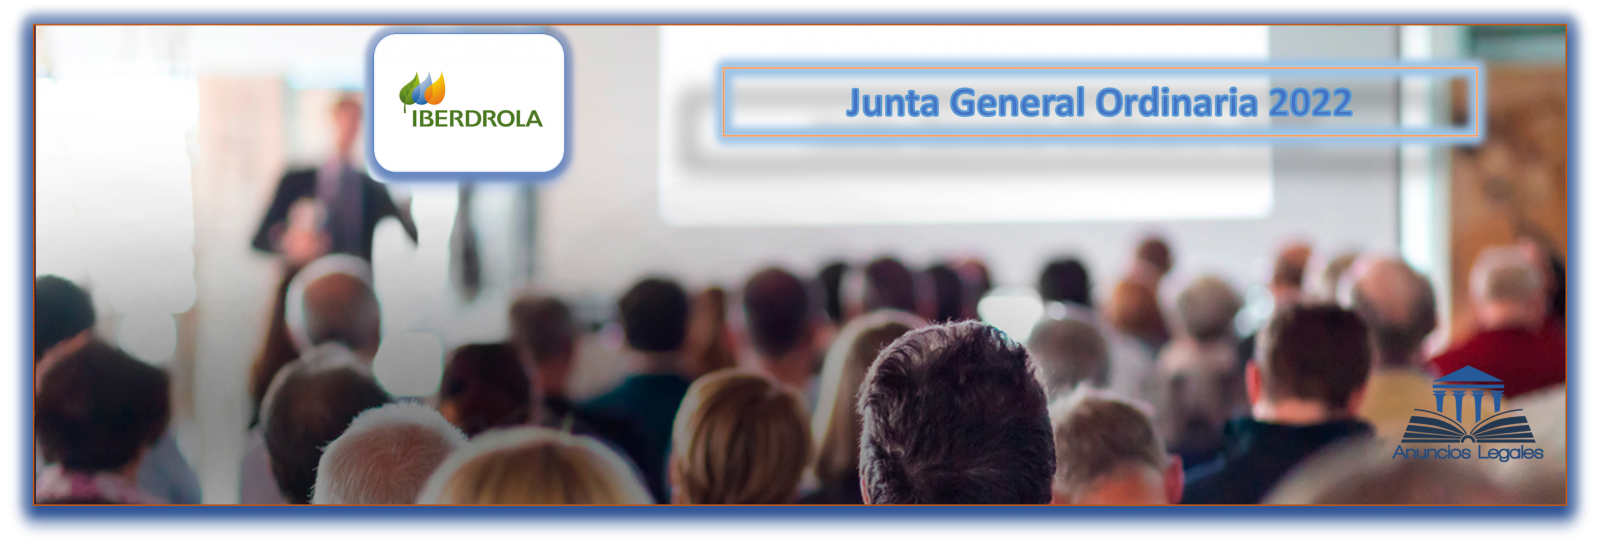 La sociedad Iberdrola anuncia Junta General Ordinaria de Accionistas 2022